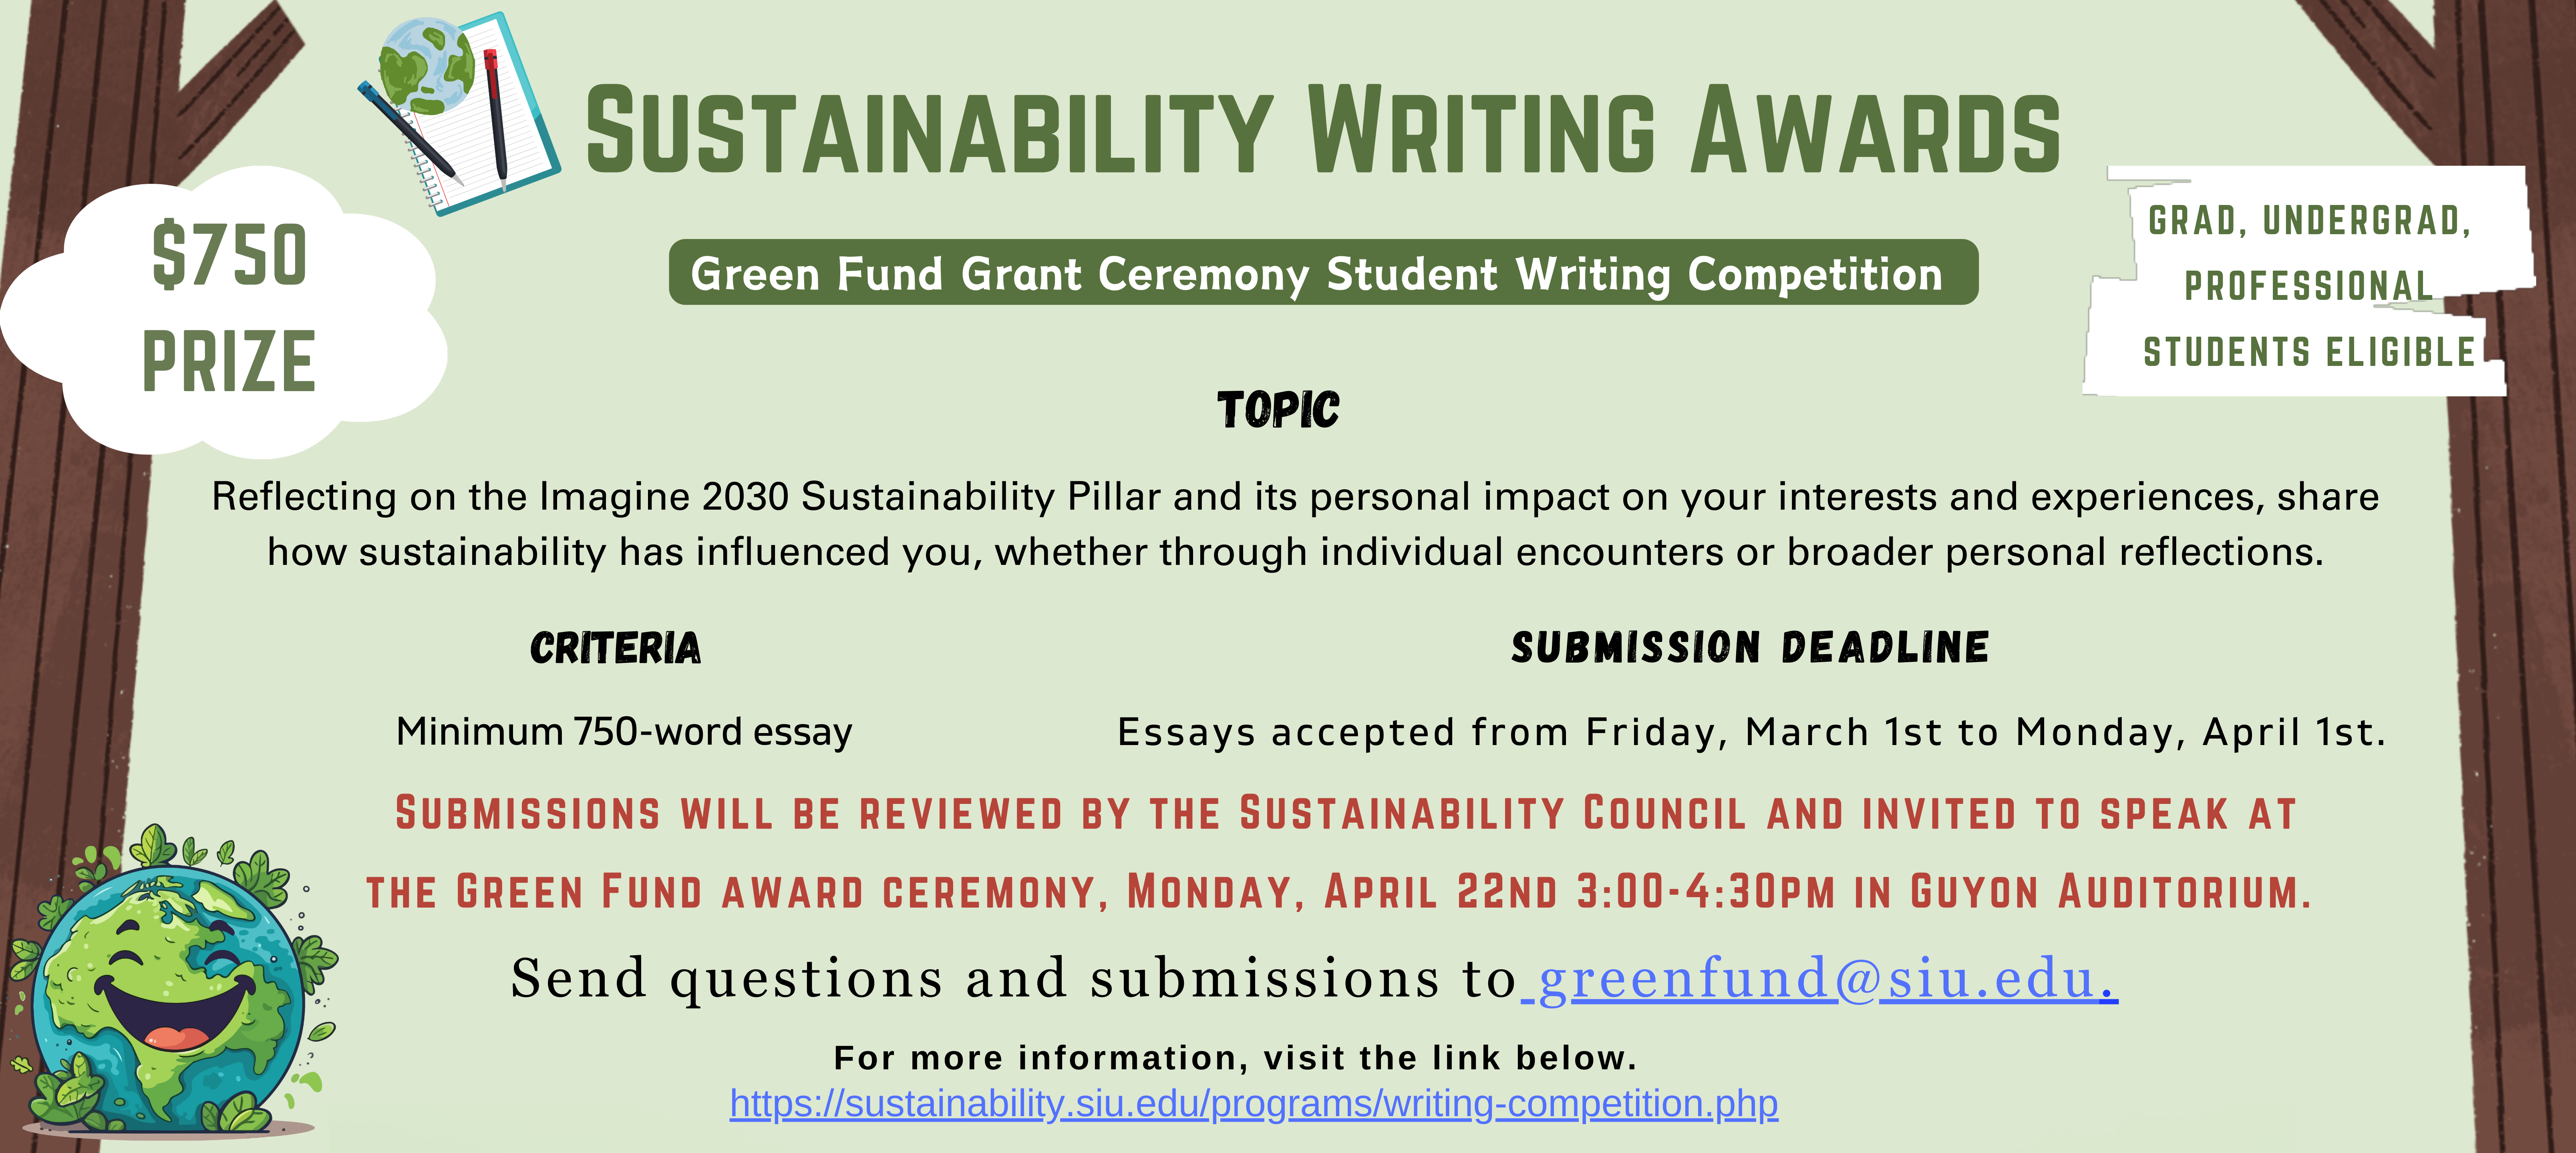 Sustainability Writing Awards